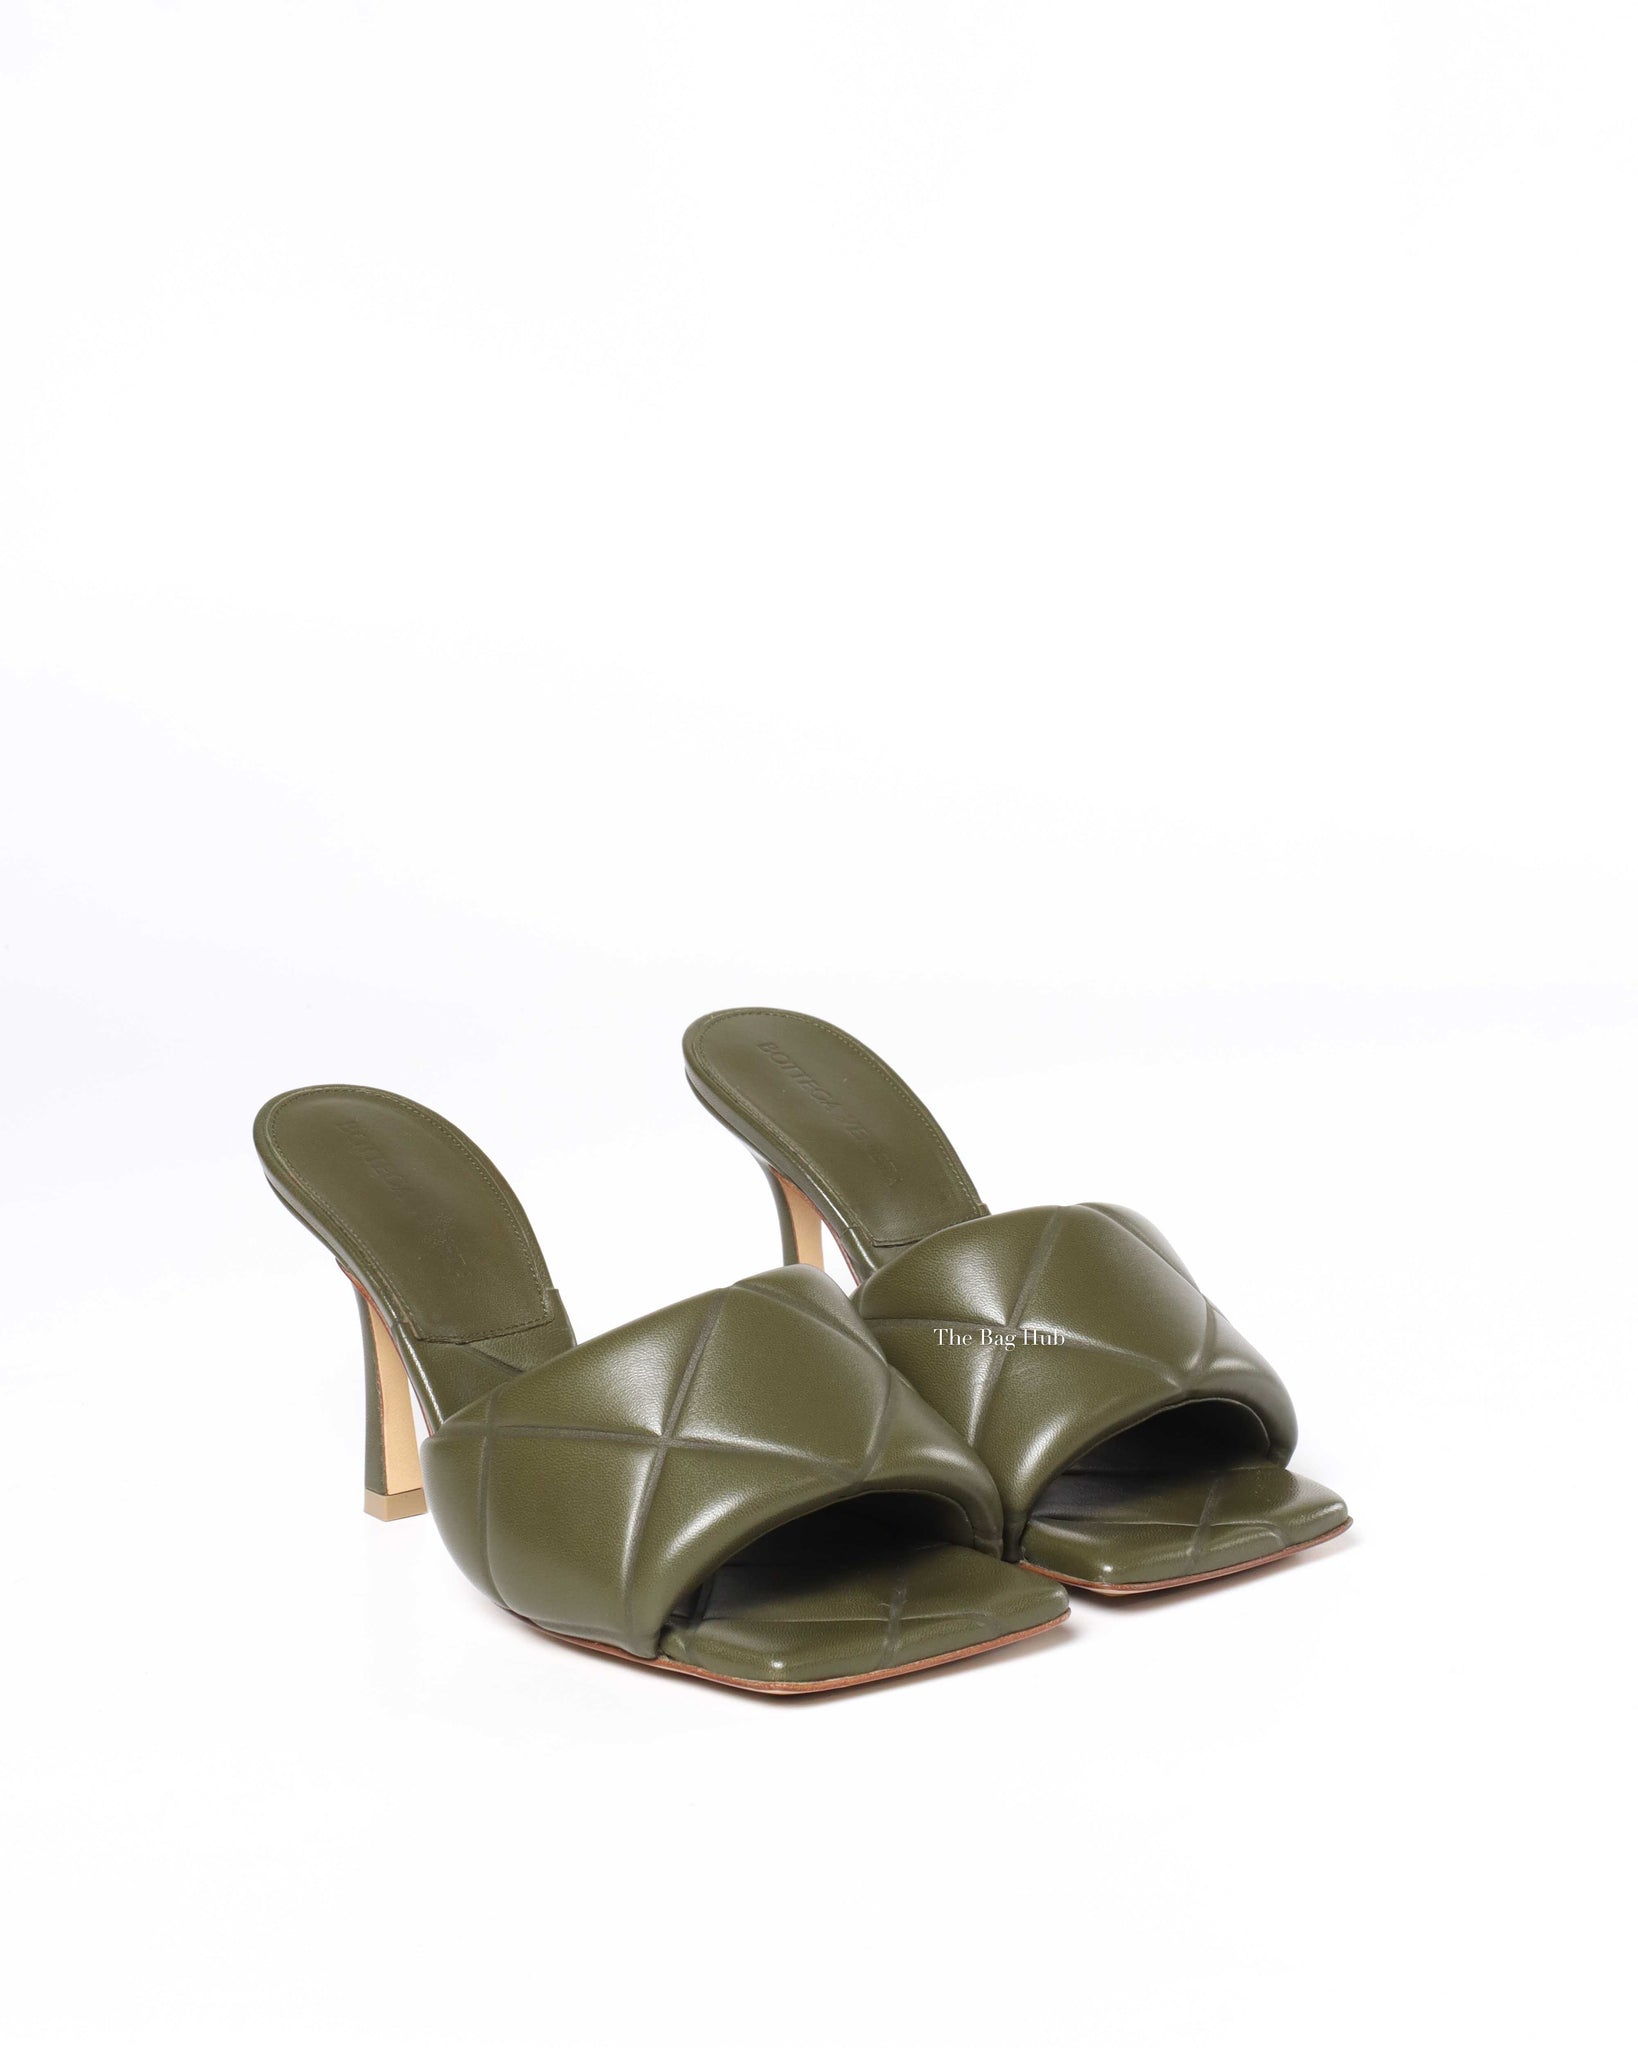 Bottega Veneta Khaki/Green Nappa Quilted Lido Sandals Size 36